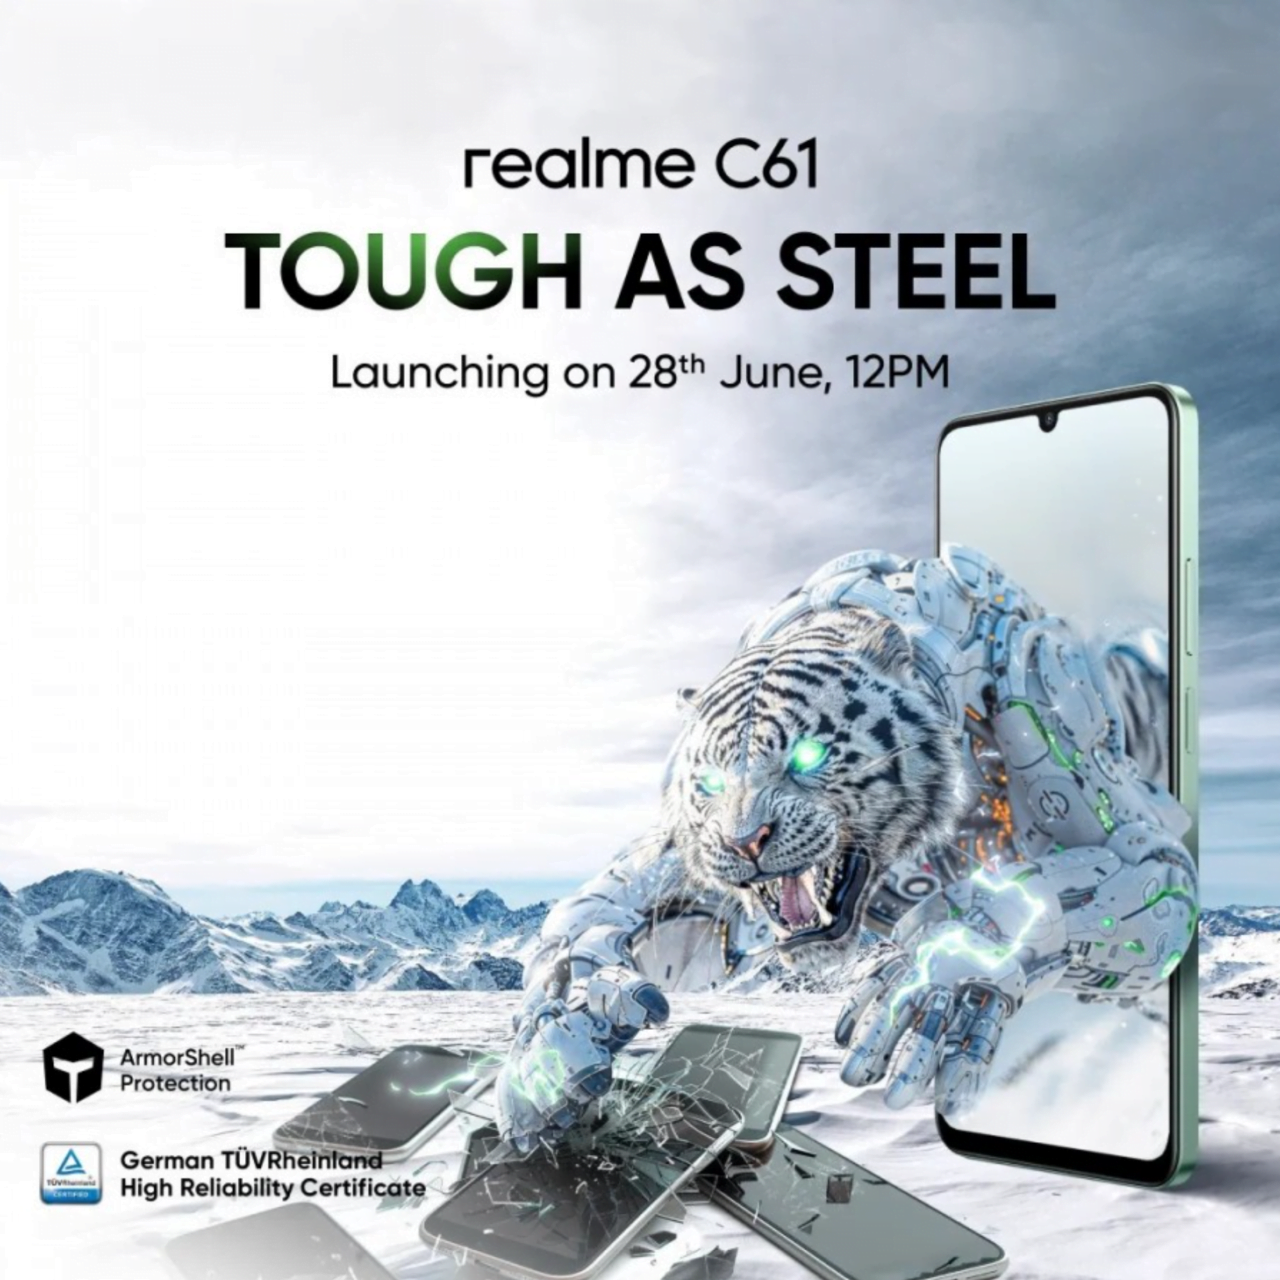 Reklama smartfona realme C61 z tekstem "TOUGH AS STEEL" i obrazem cybernetycznego tygrysa przechodzącego przez ekran telefonu, łamiącego inne telefony.